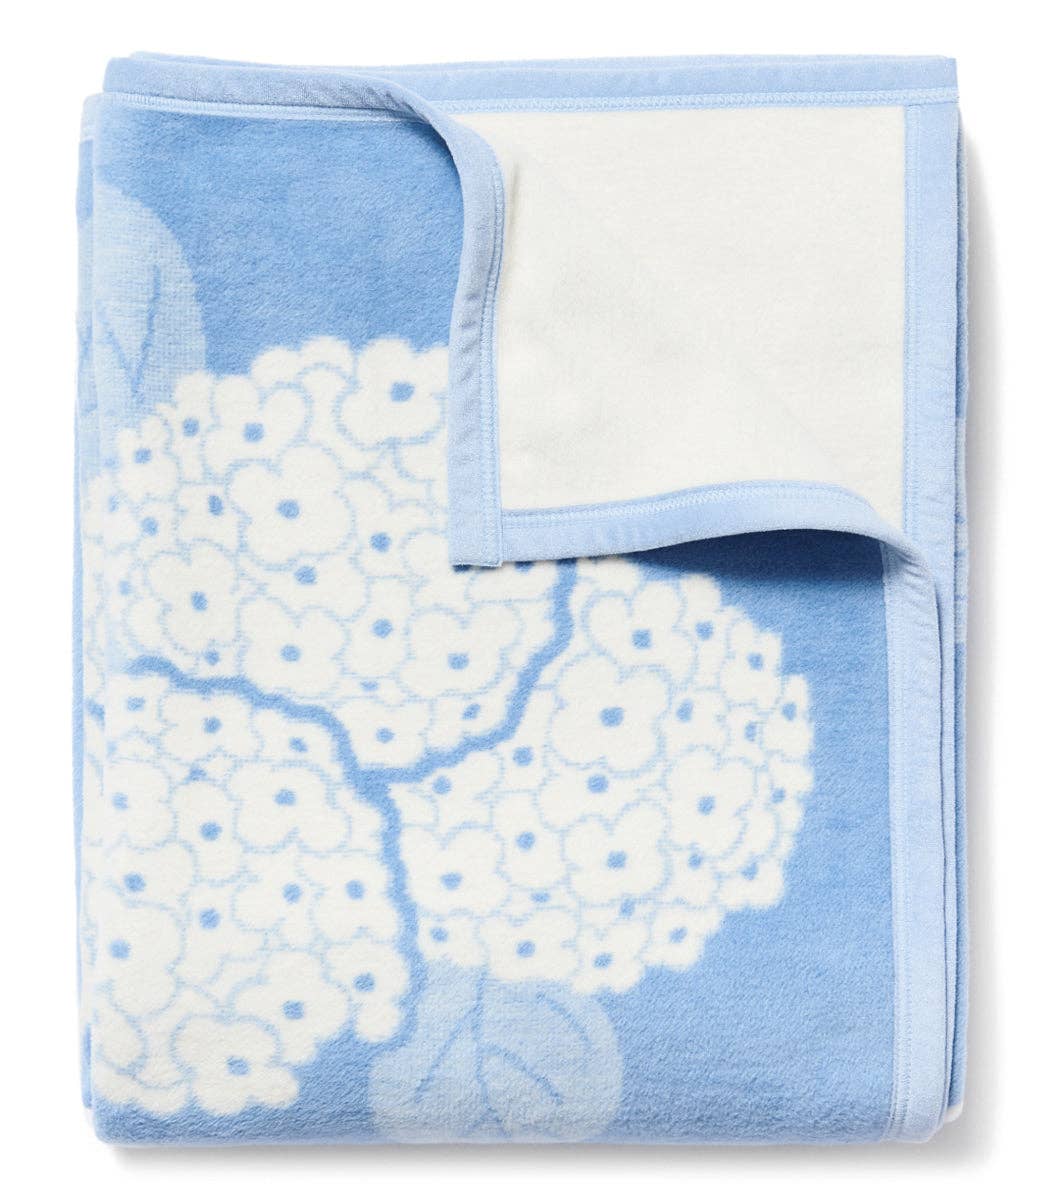 Hydrangeas Light Blue Blanket by ChappyWrap - The Preppy Bunny